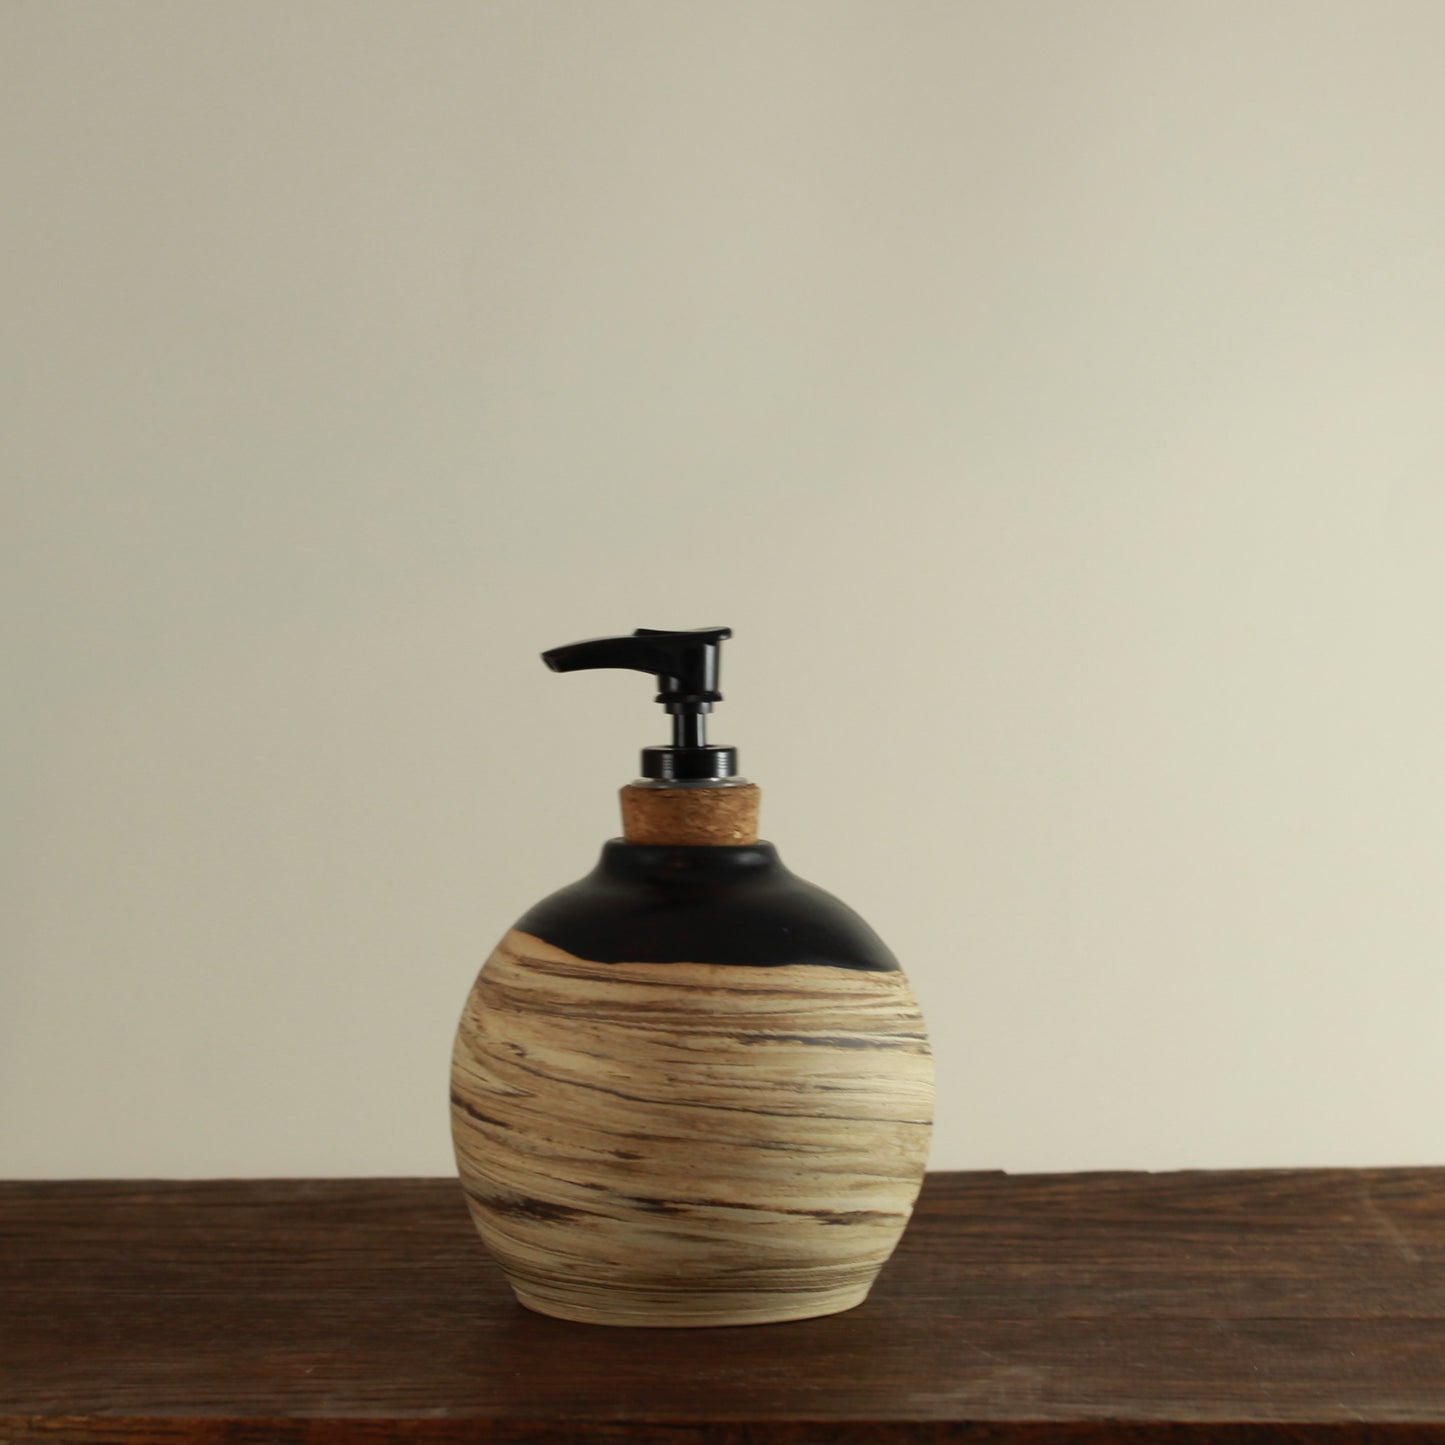 Handmade Soap/Lotion Dispenser